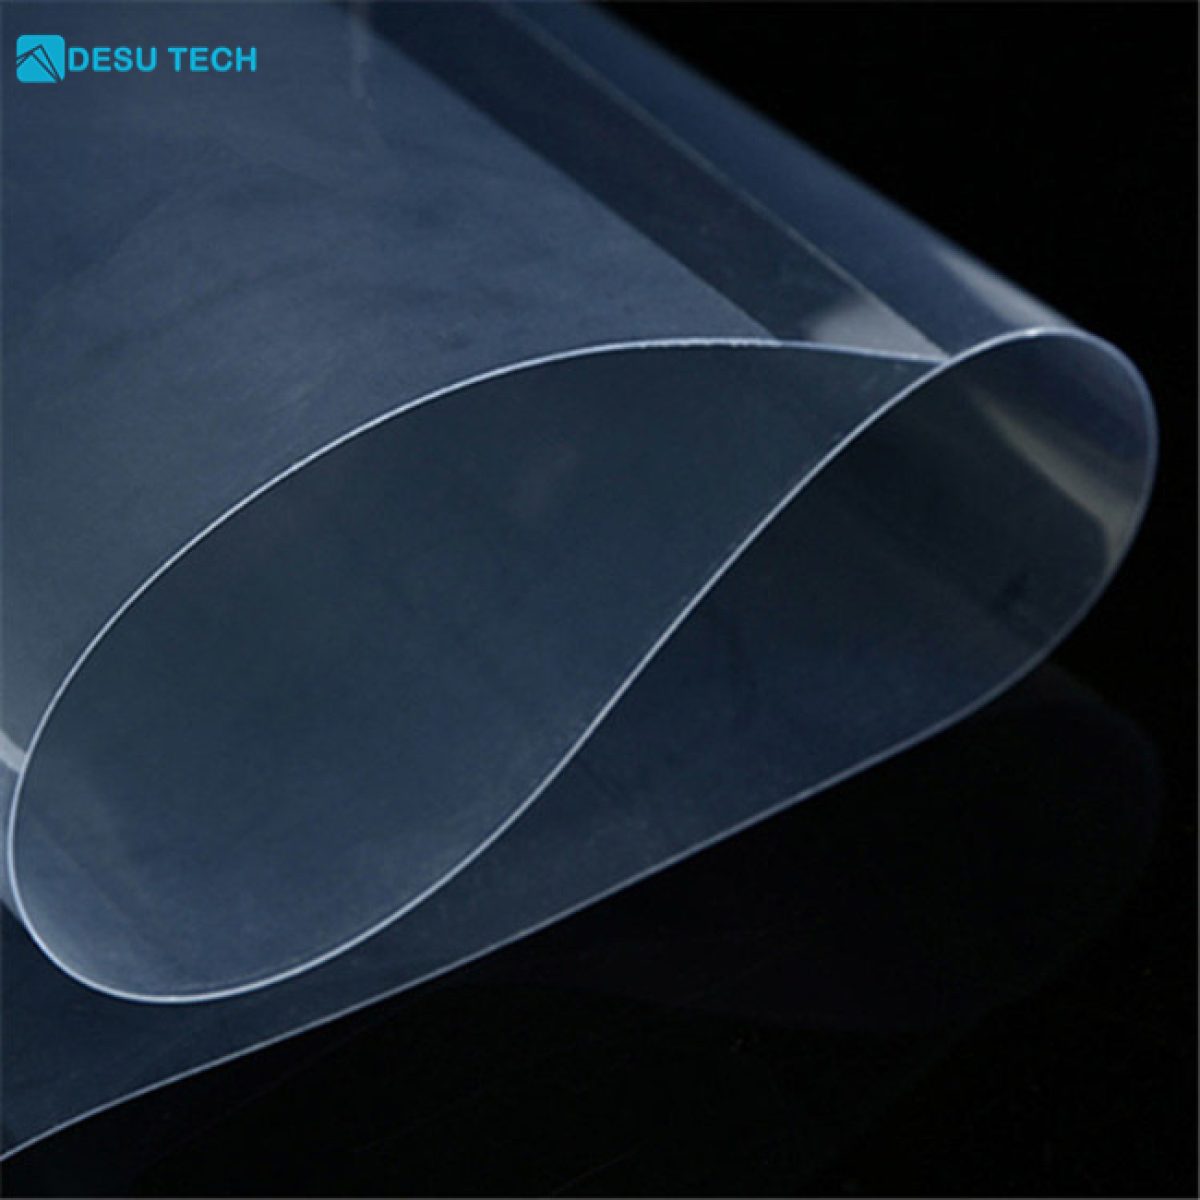 China Customized Flexible Translucent PE Plastic Sheet